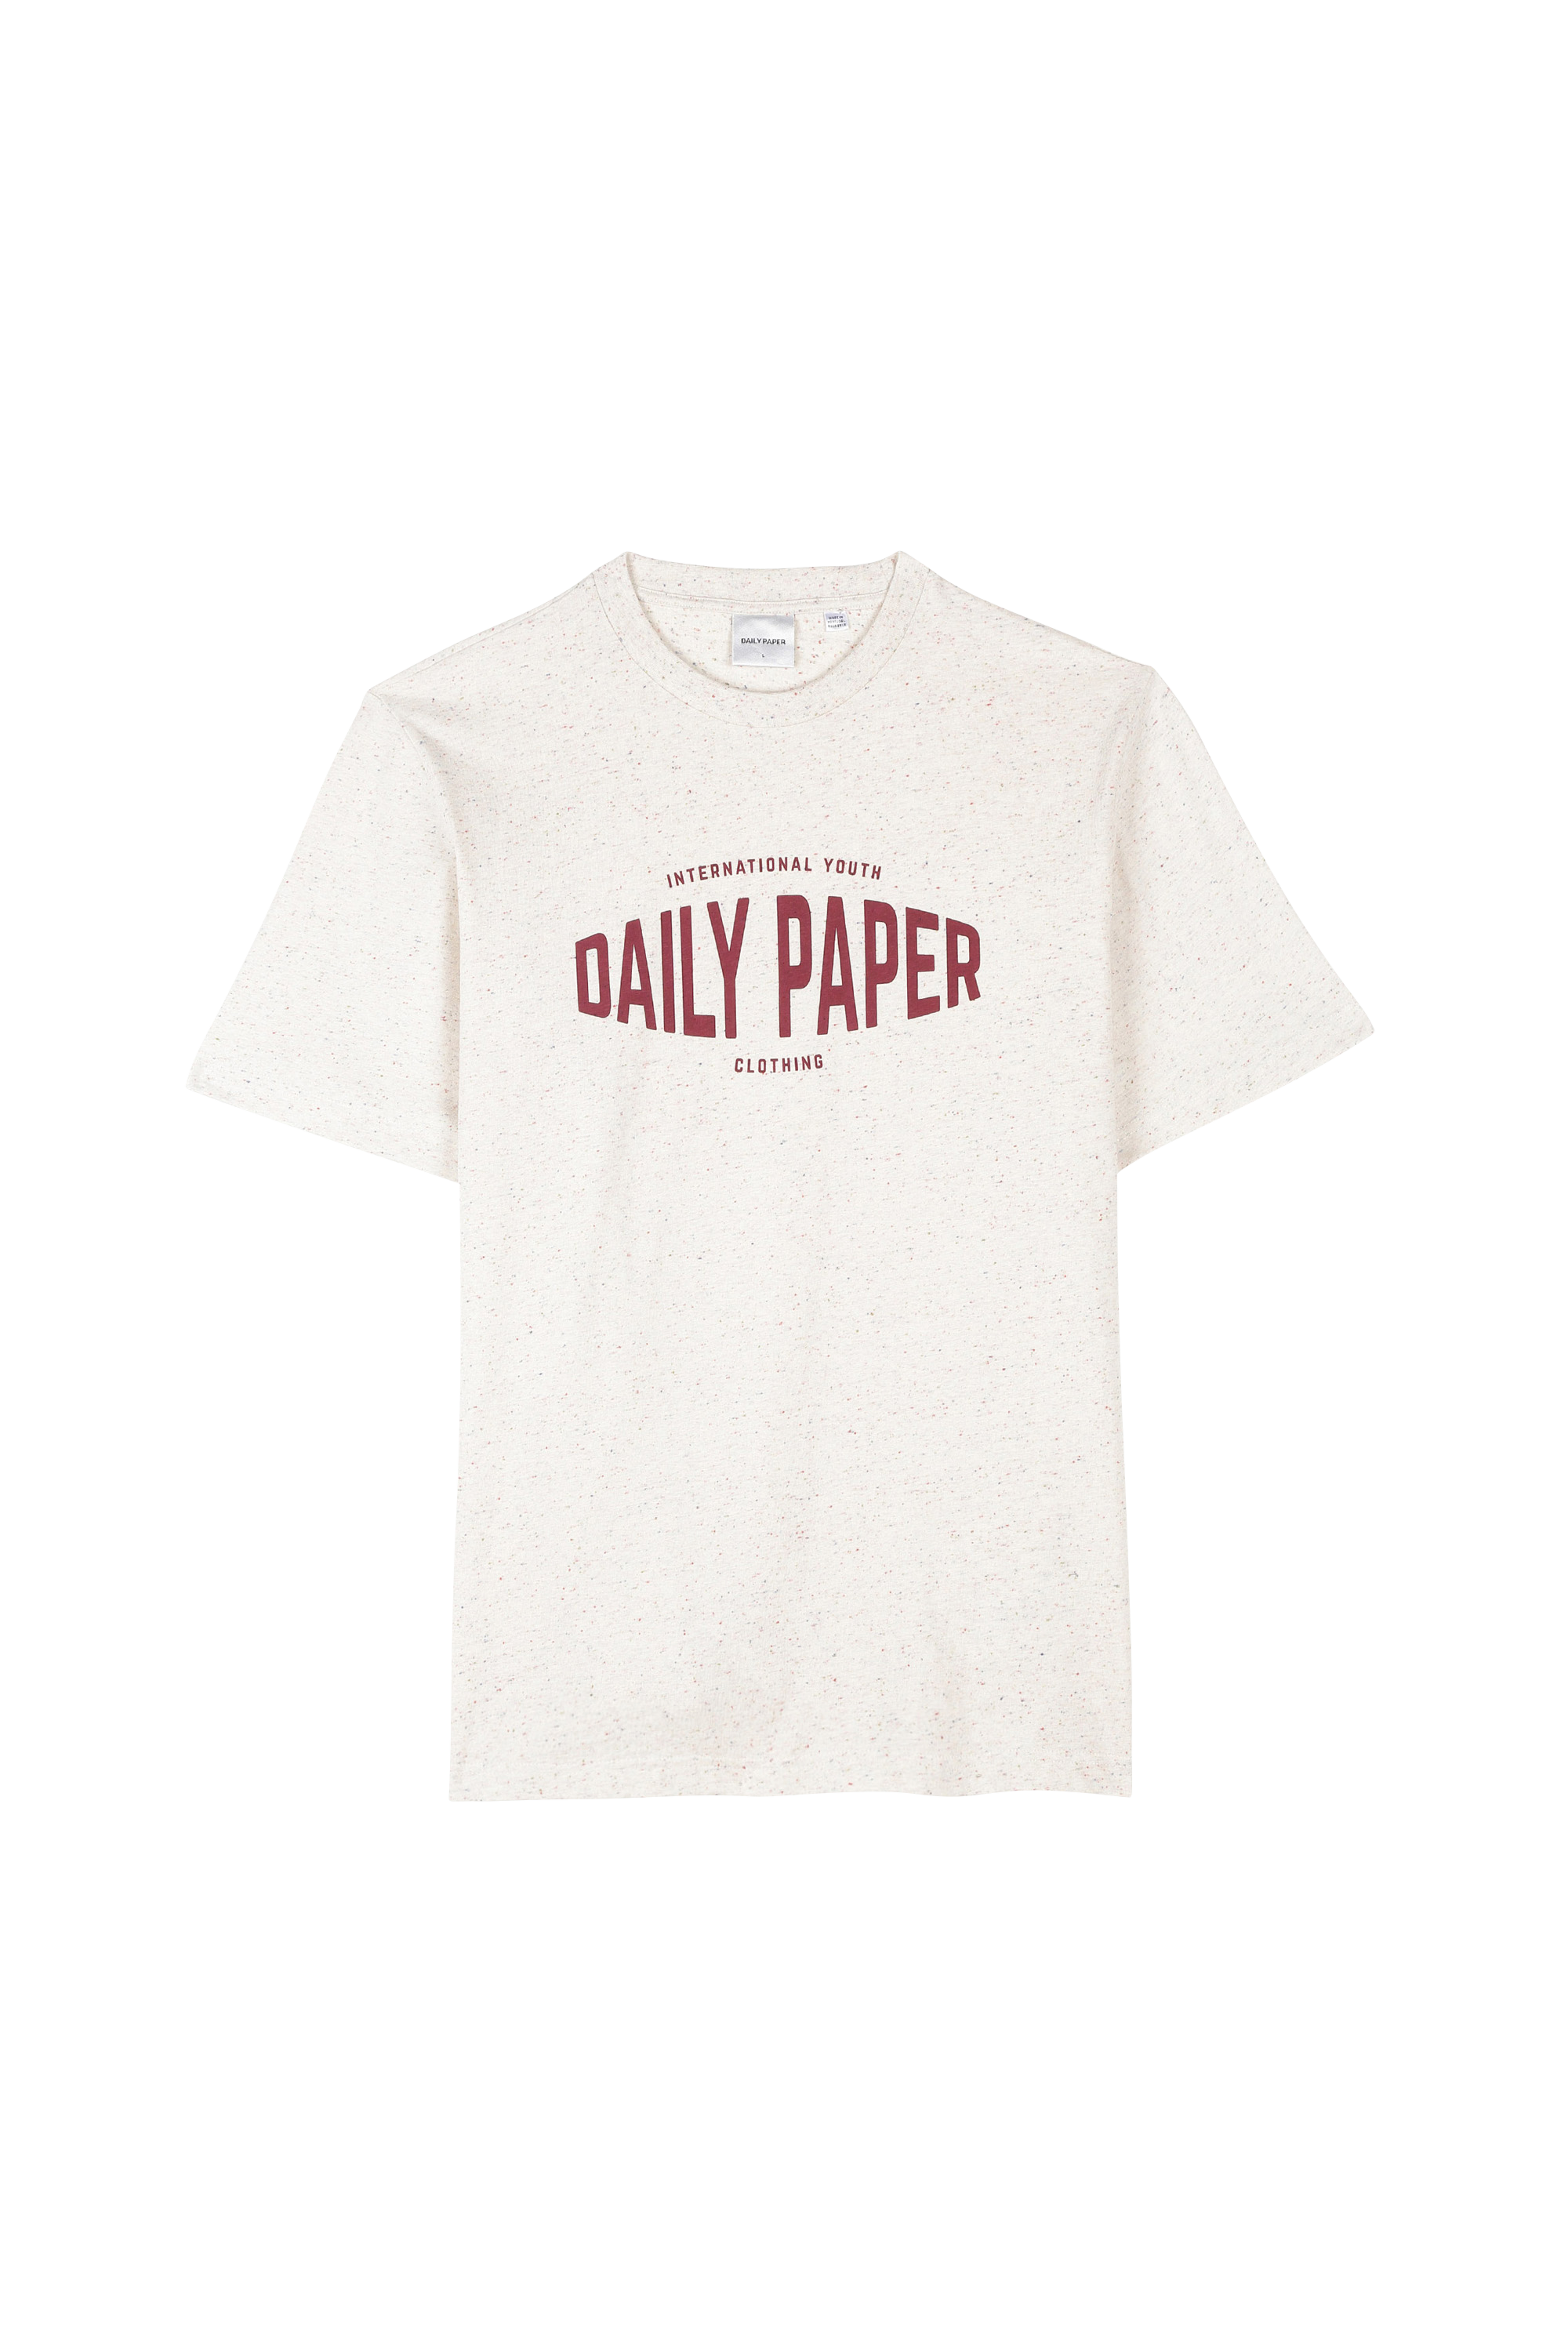 Polo Ralph Lauren Citadium Homme Vêtements Tops & T-shirts T-shirts Manches courtes 